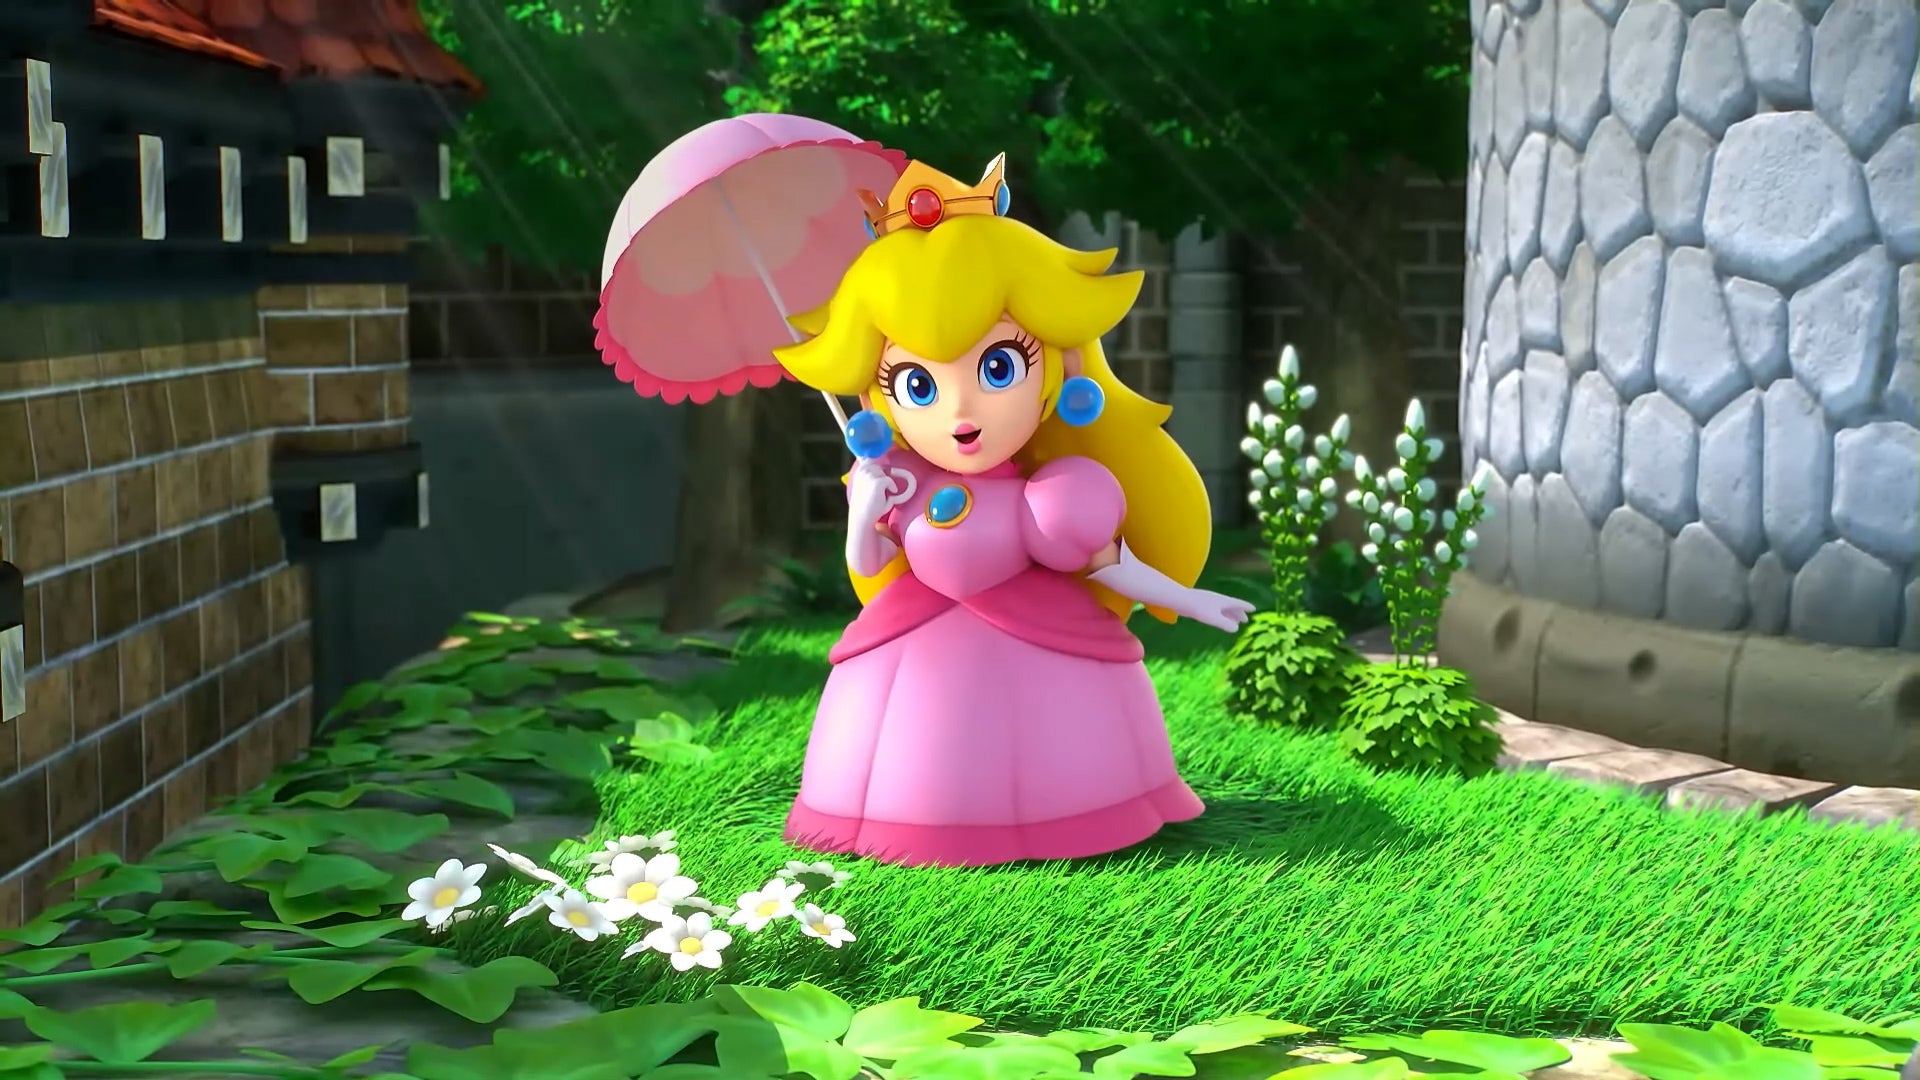 Nintendo a publié plusieurs captures d'écran de Super Mario RPG Remake montrant des lieux, des batailles, etc.